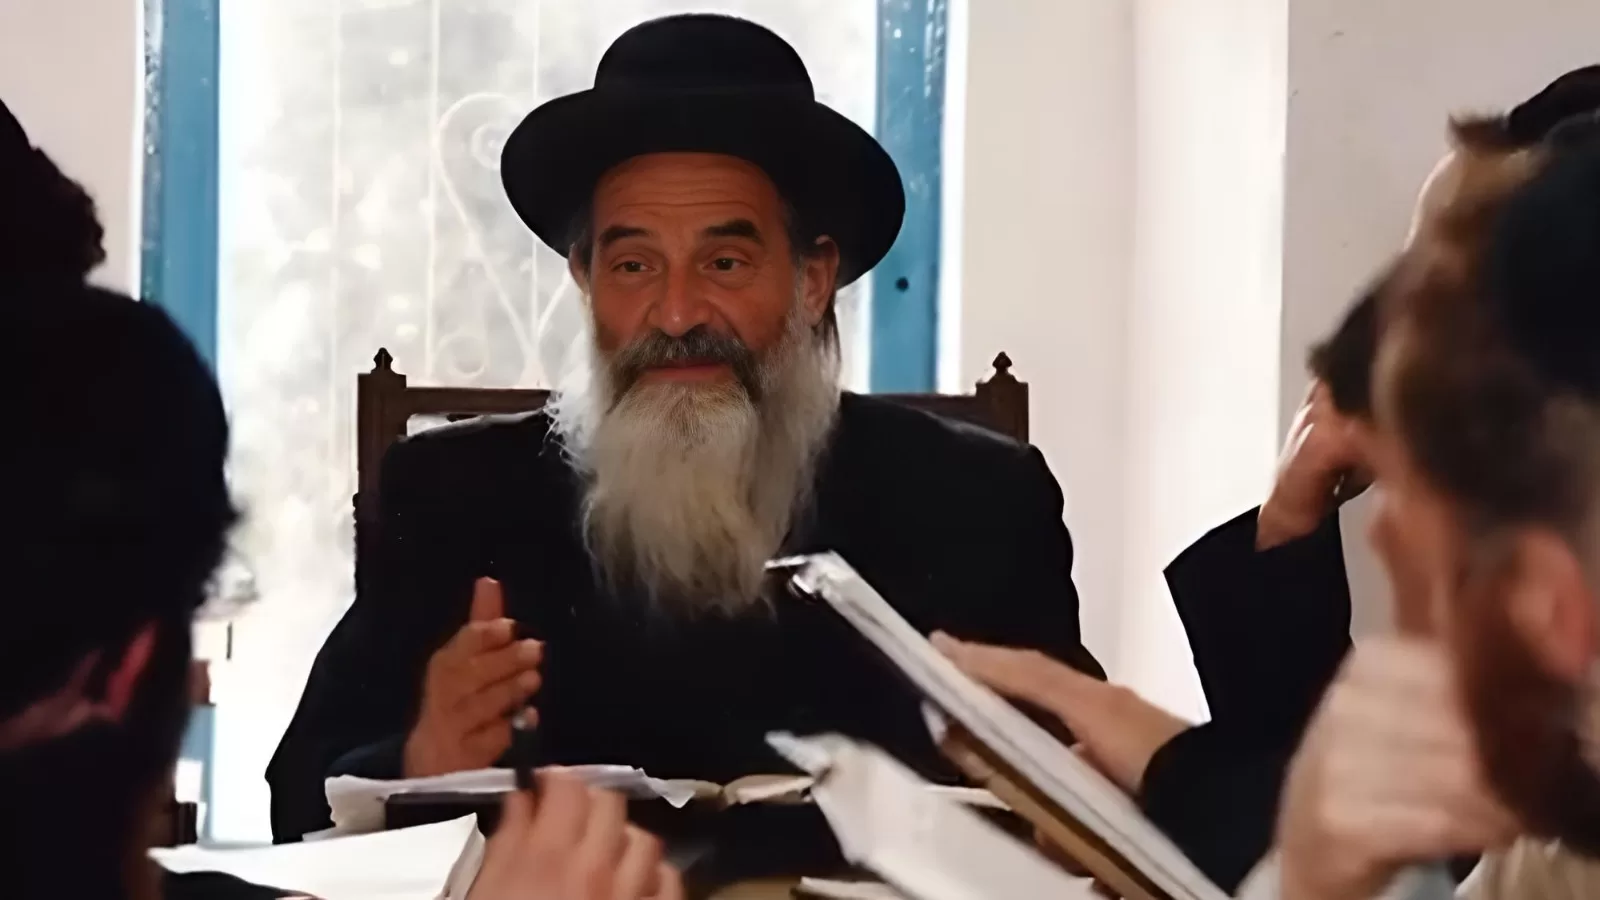 Rebbe HaRav Mordechai Goldstein Teaching Torah to Jewish Men